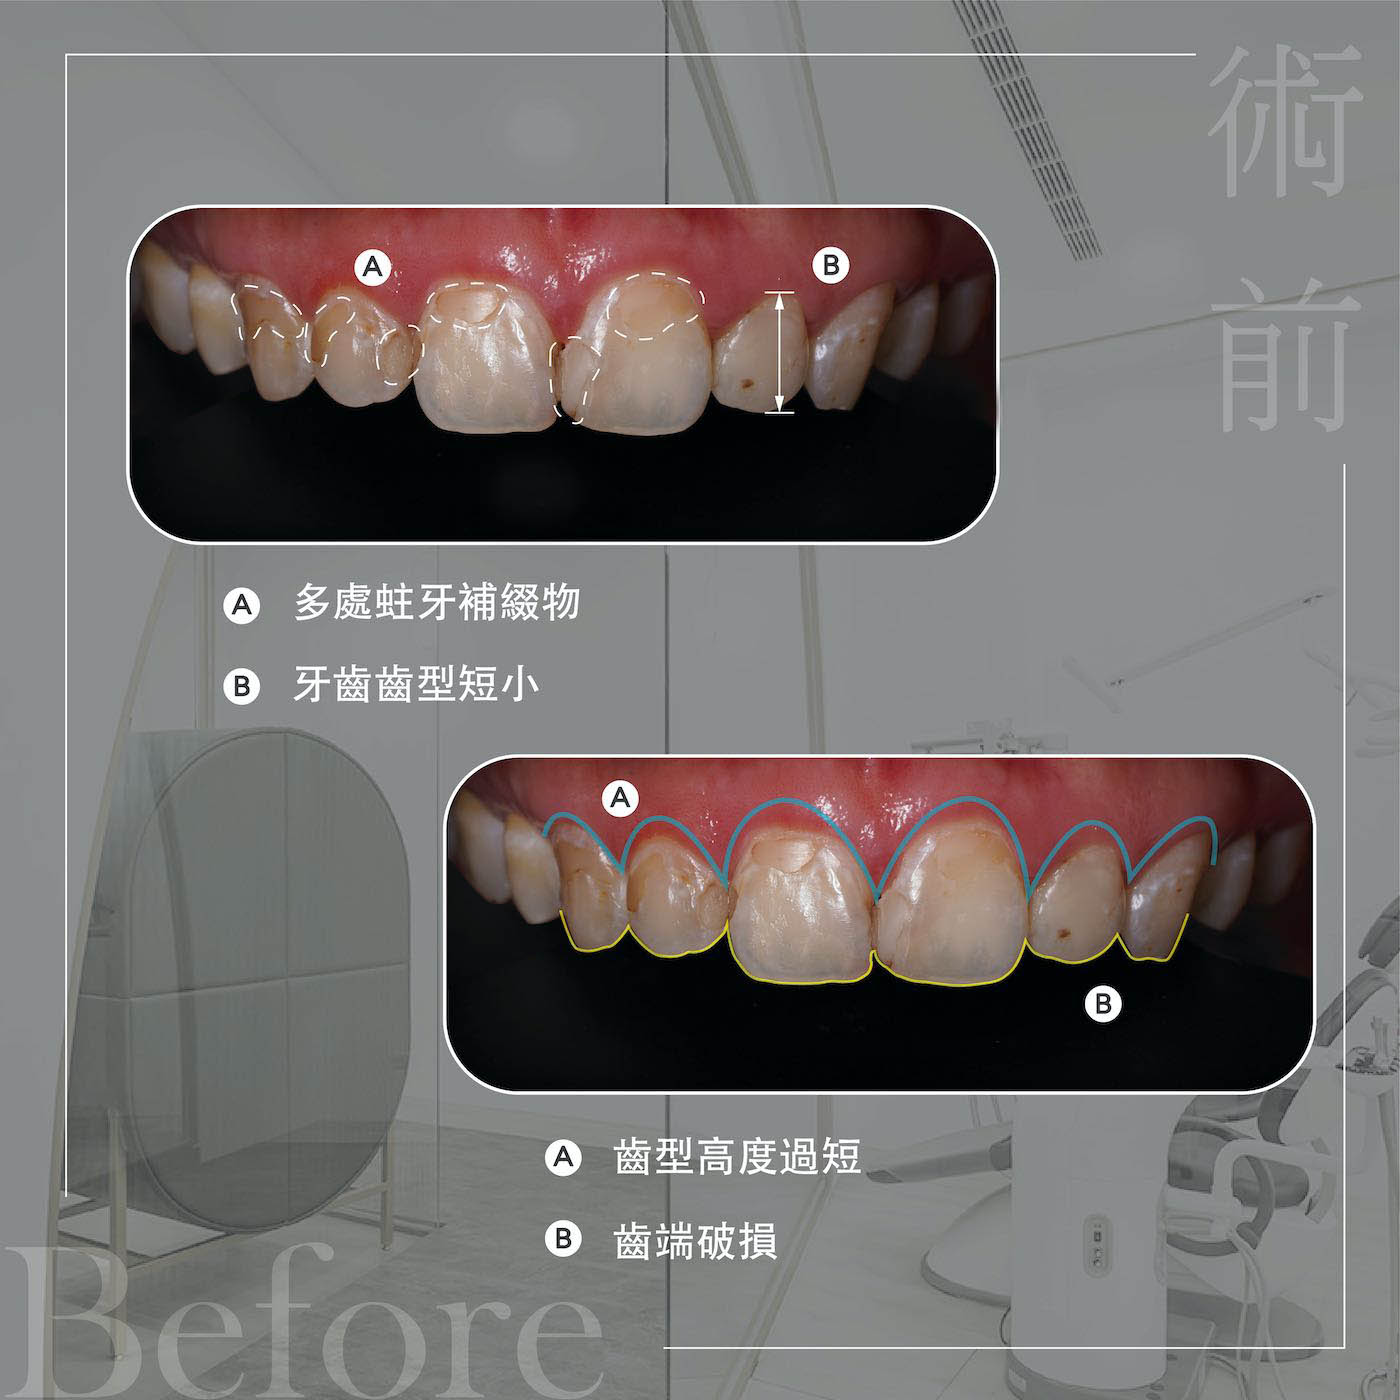 療程前上排牙齒外觀，矯正後仍有牙齒黃、蛀牙補牙變色、牙型短小等問題